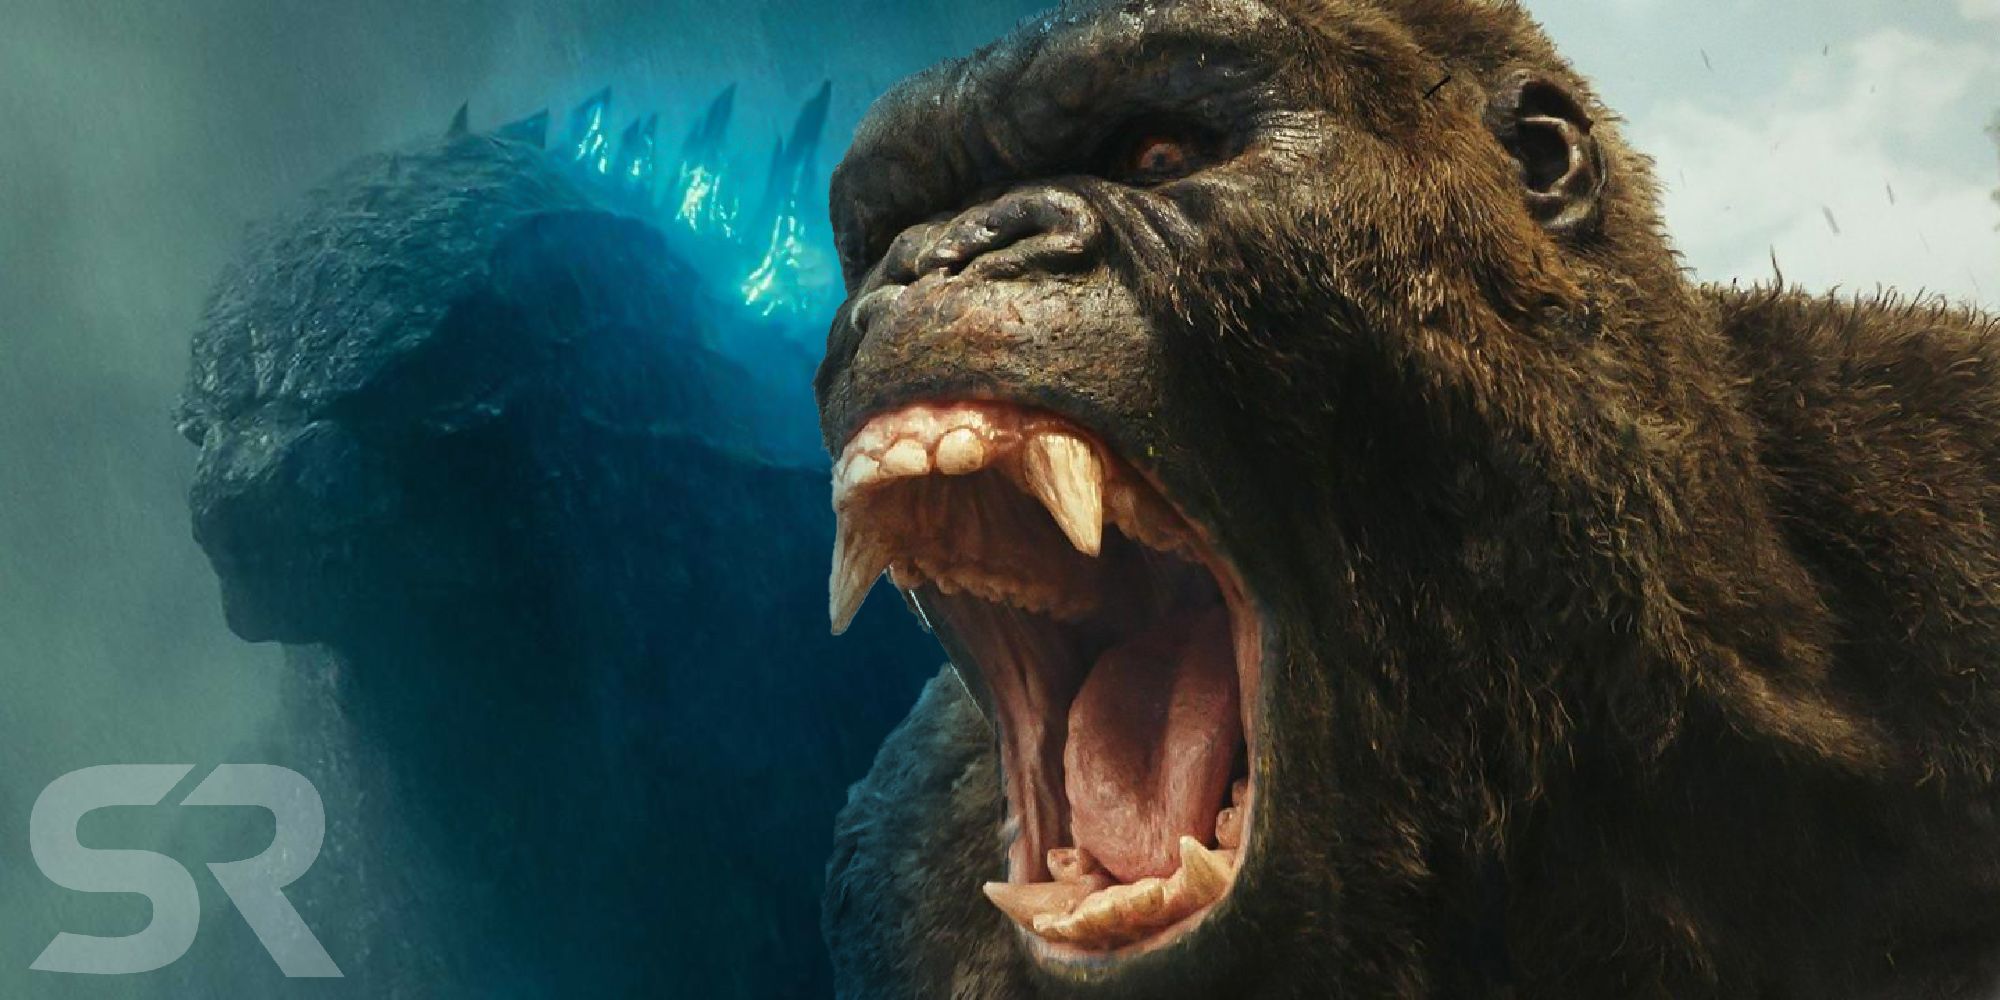 Godzilla Vs Kong Warbat Toy Release Date / Leaked Godzilla Vs Kong Toys